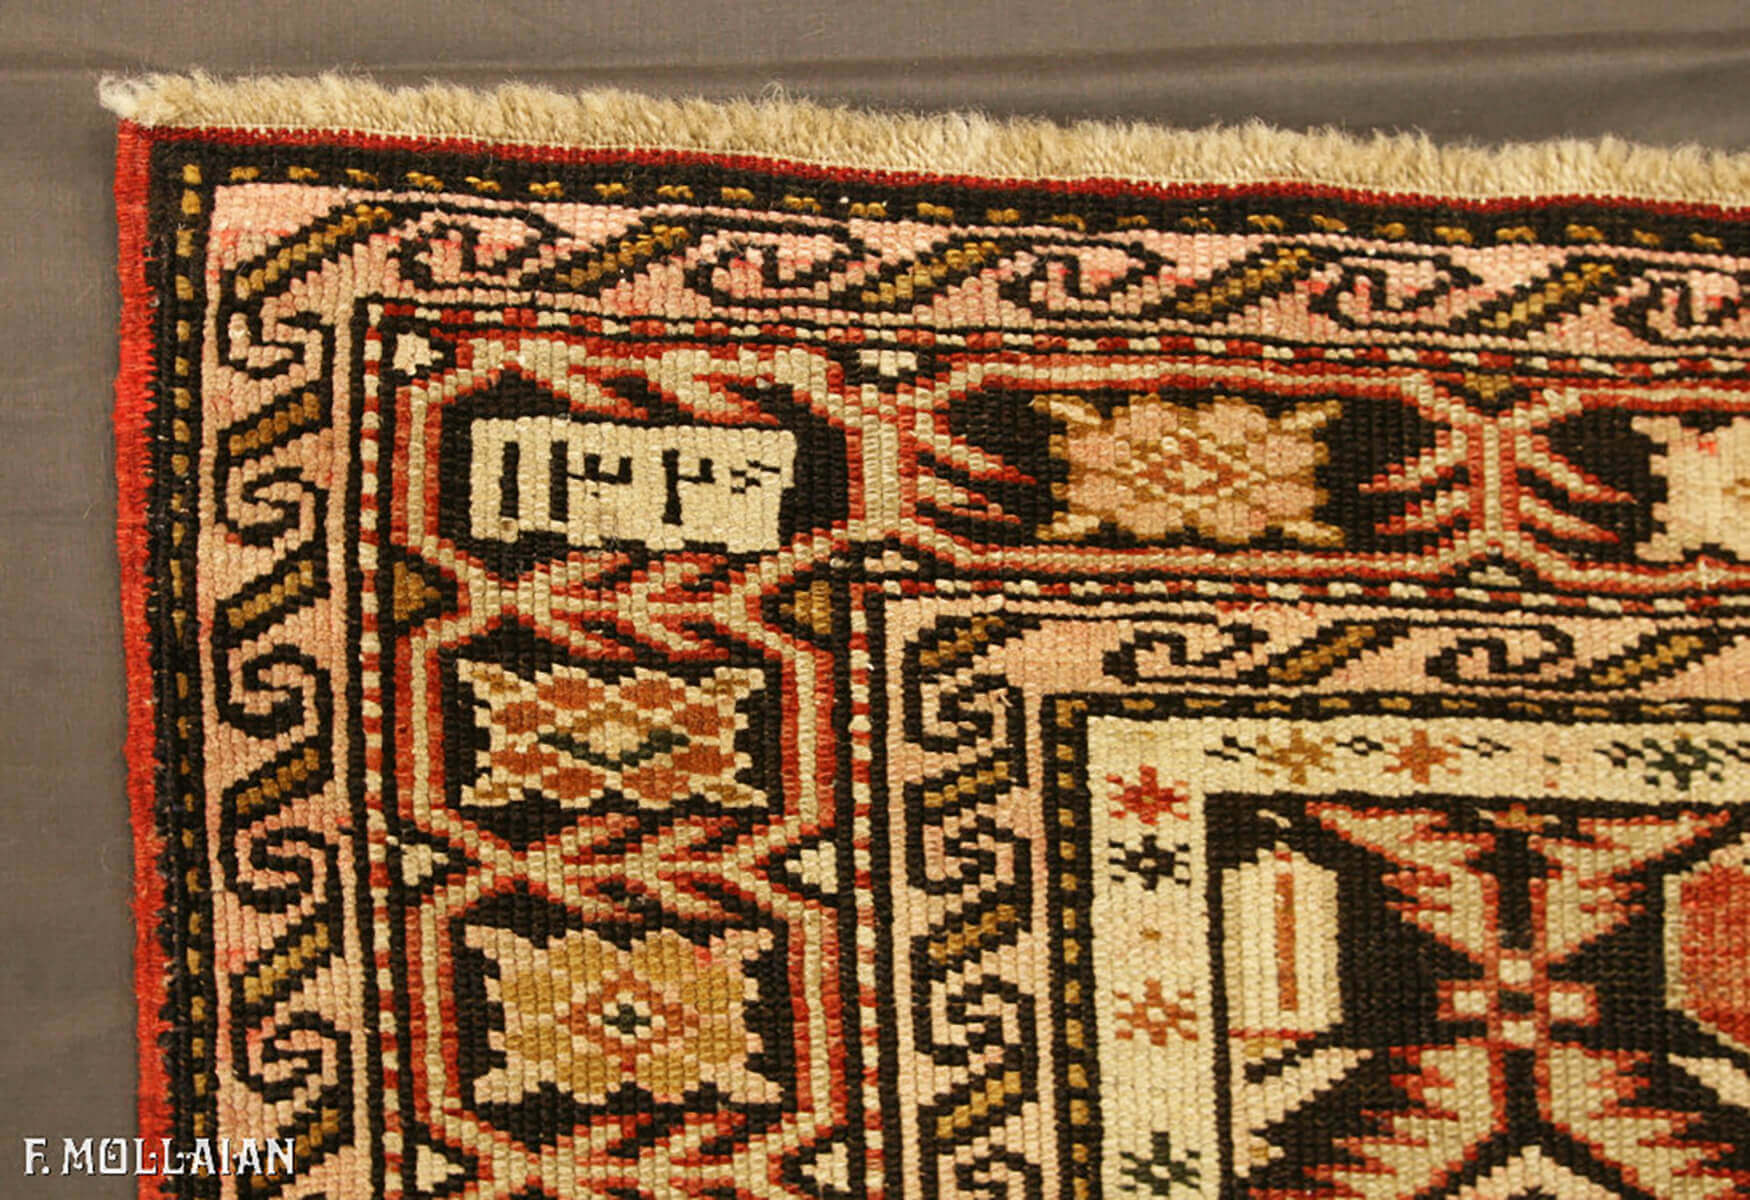 Antique Caucasian Shirvan Rug n°:65415677